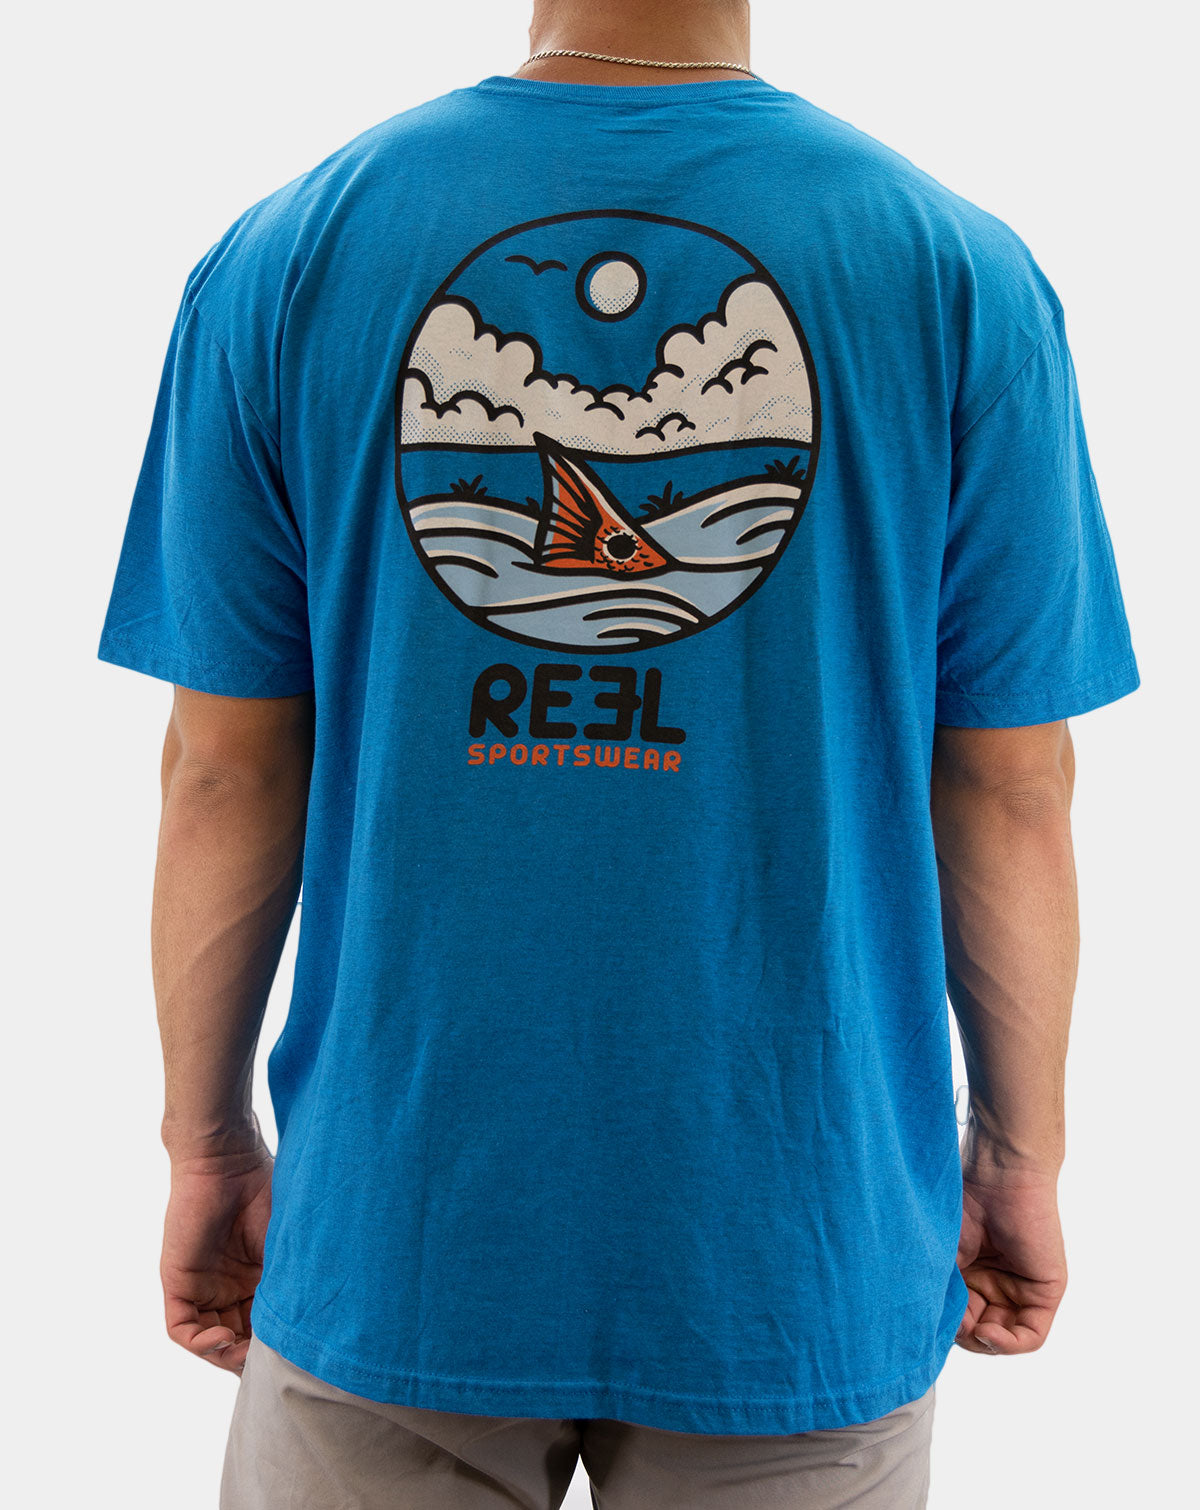 Fishing T-Shirts, Shop Online, Men's Fishing Shirts